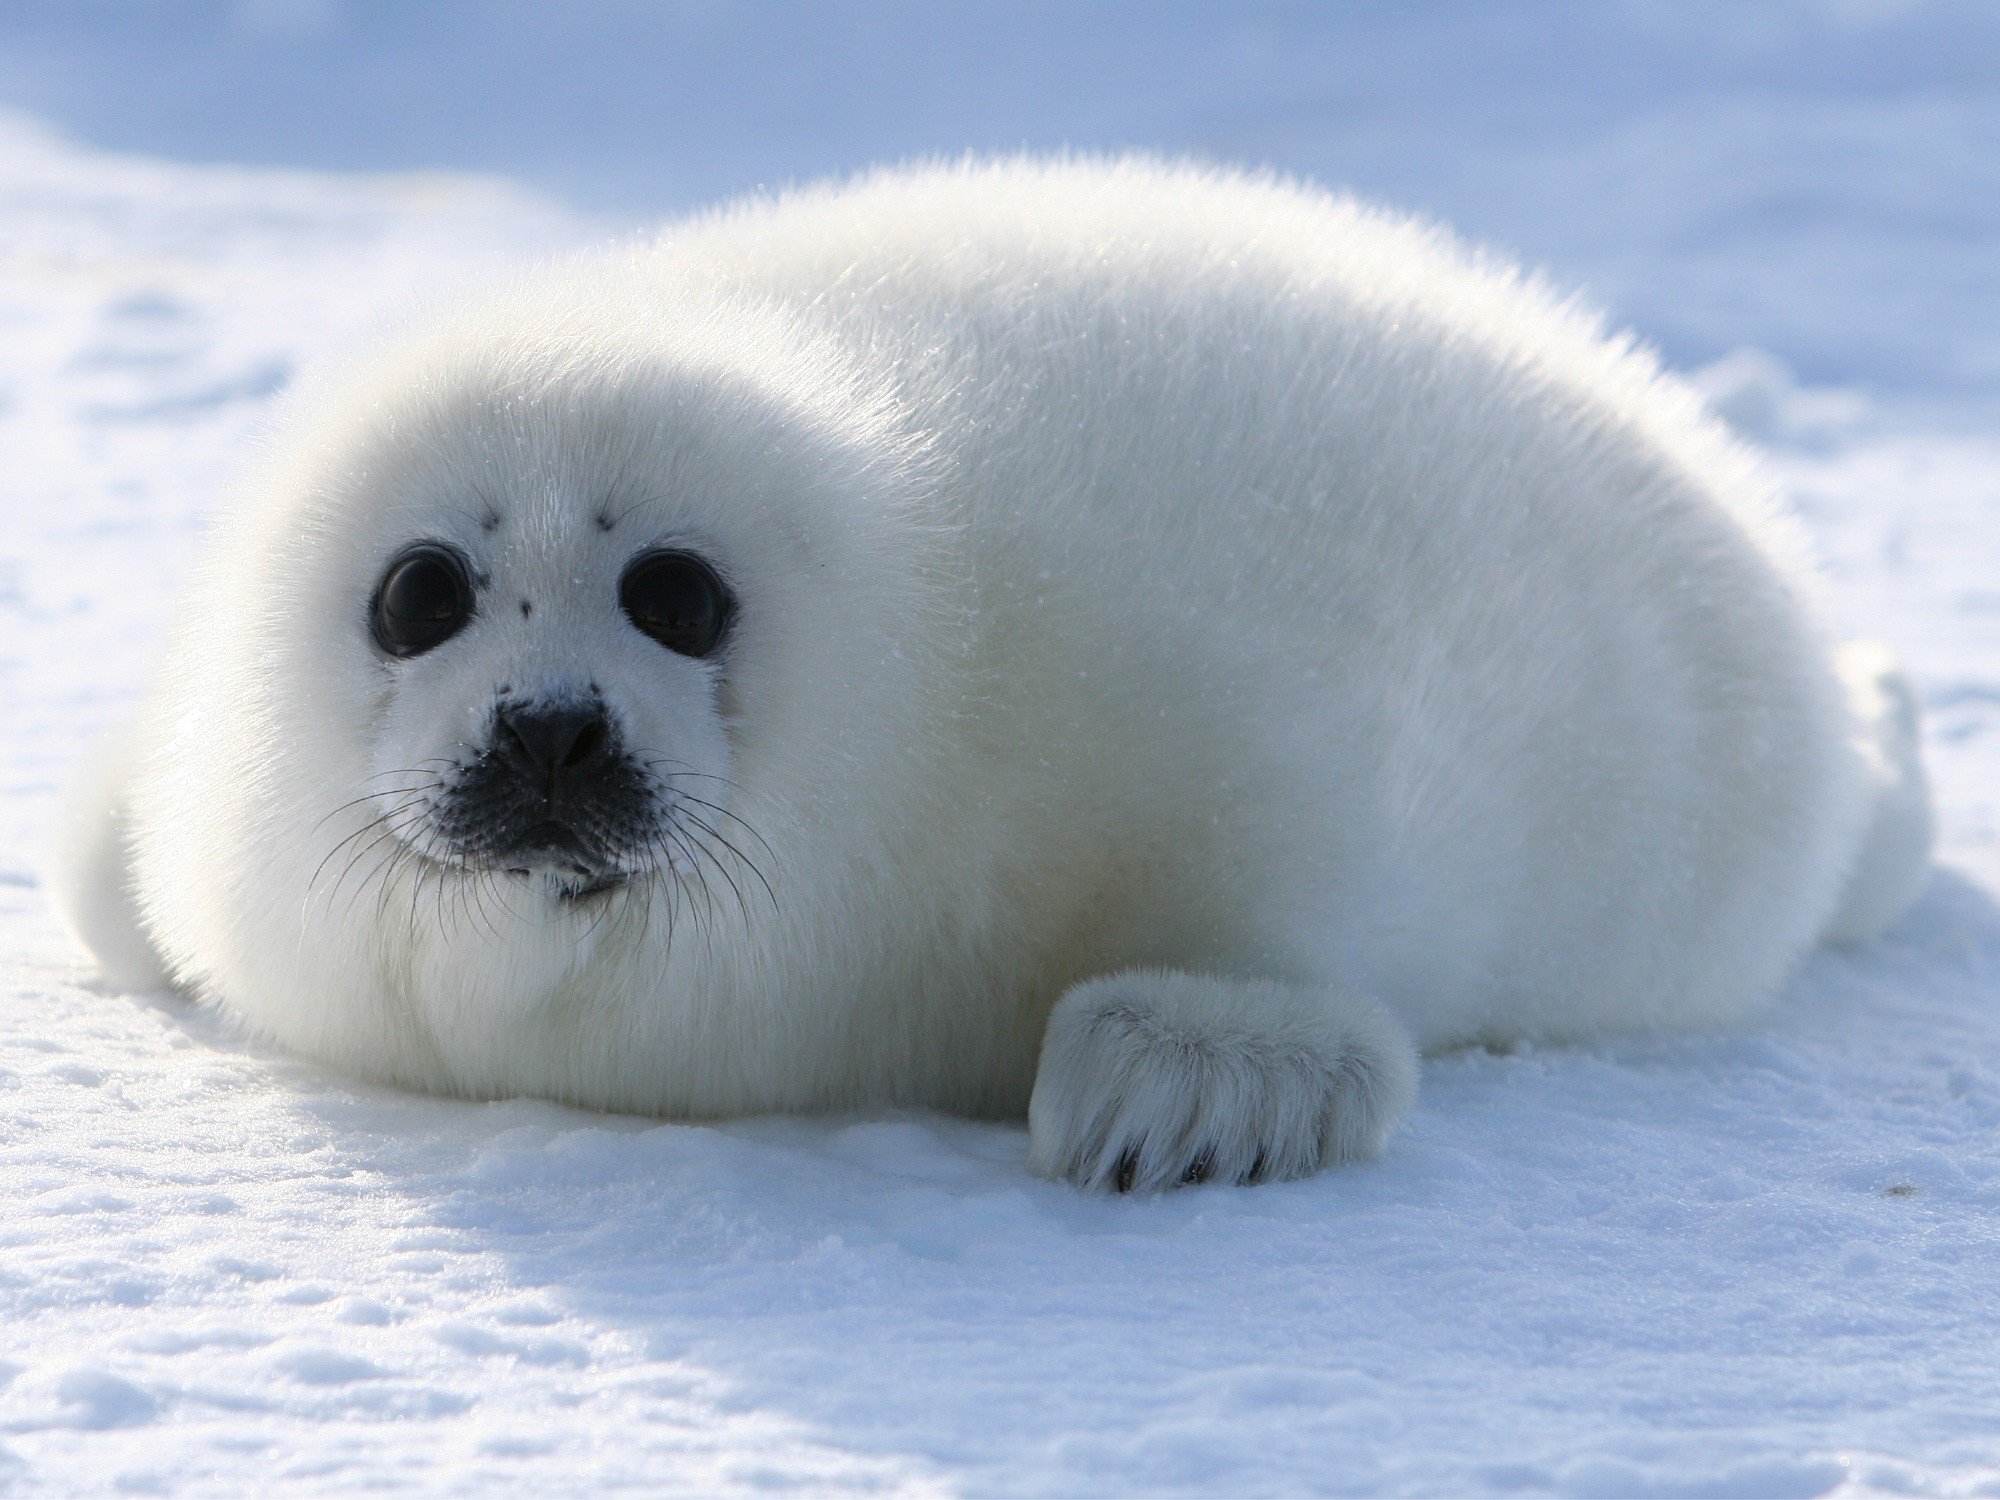 Известно что гренландский тюлень крупное млекопитающее